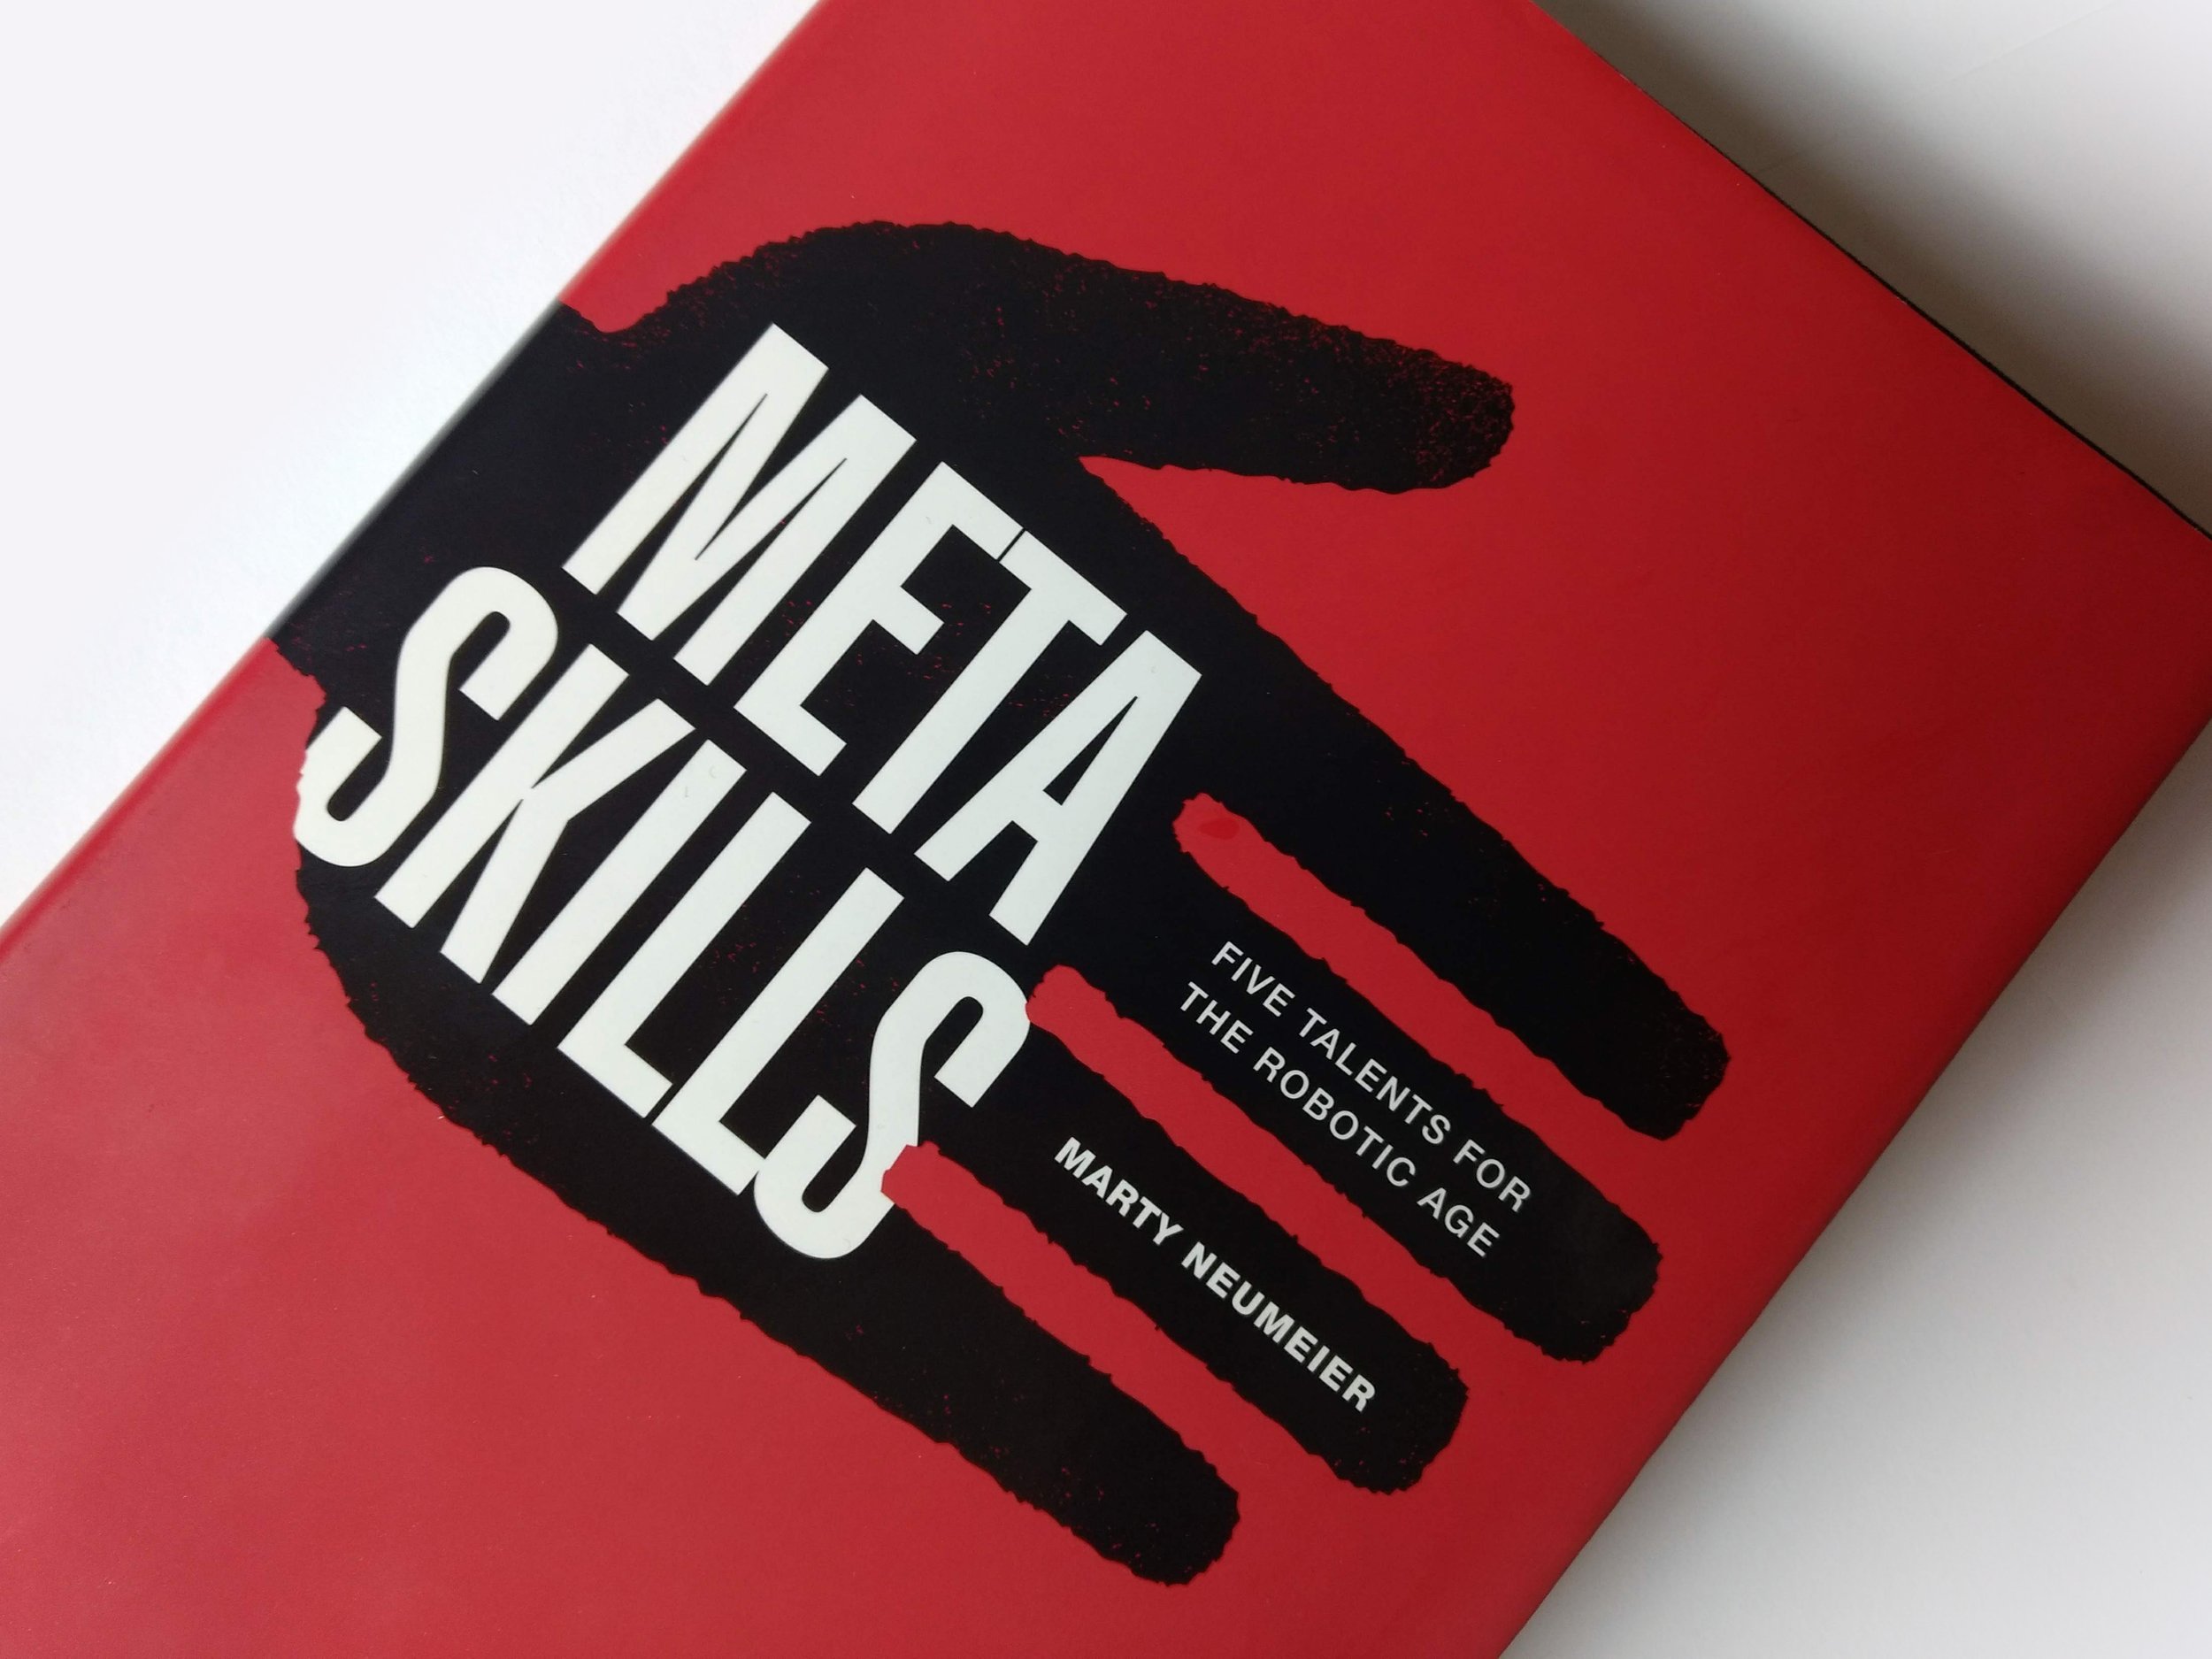 Meta_Skills_book_cover.jpg